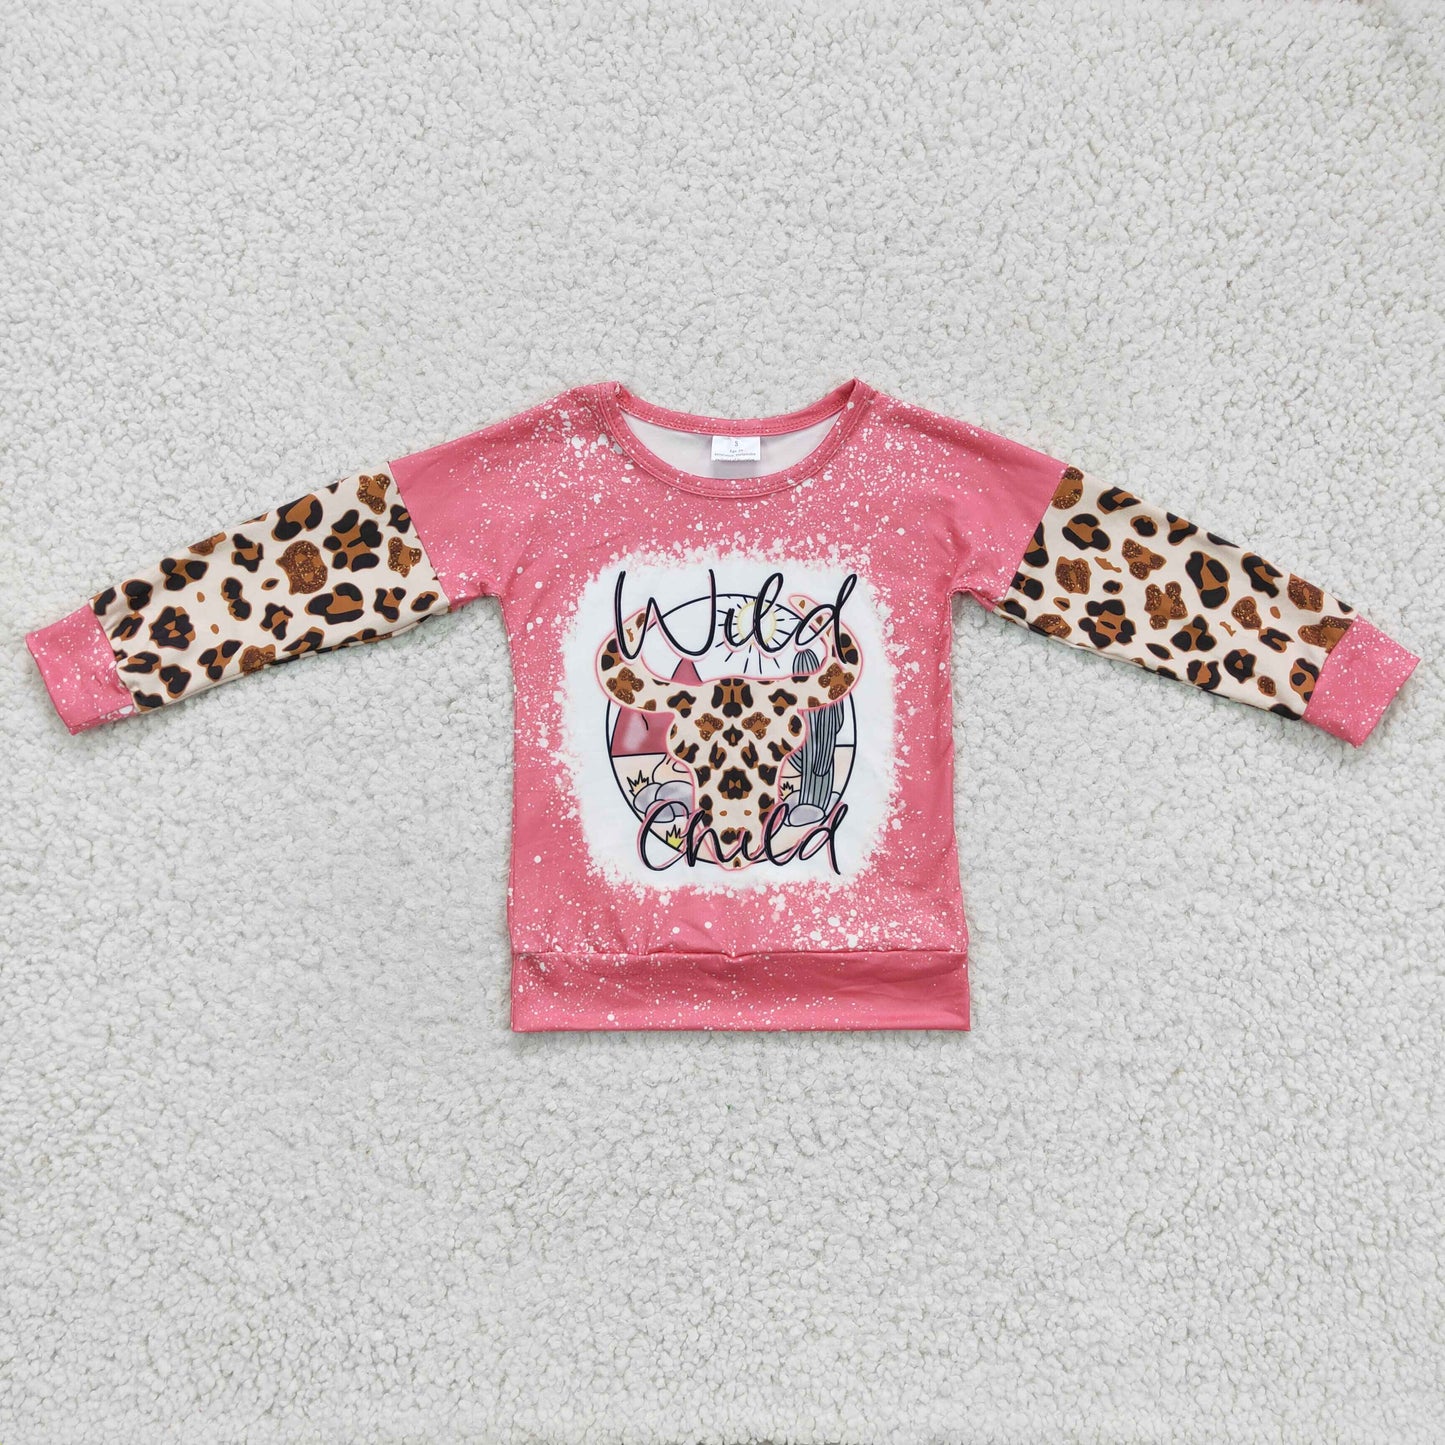 Wild child leopard cow kids girls pink western shirt